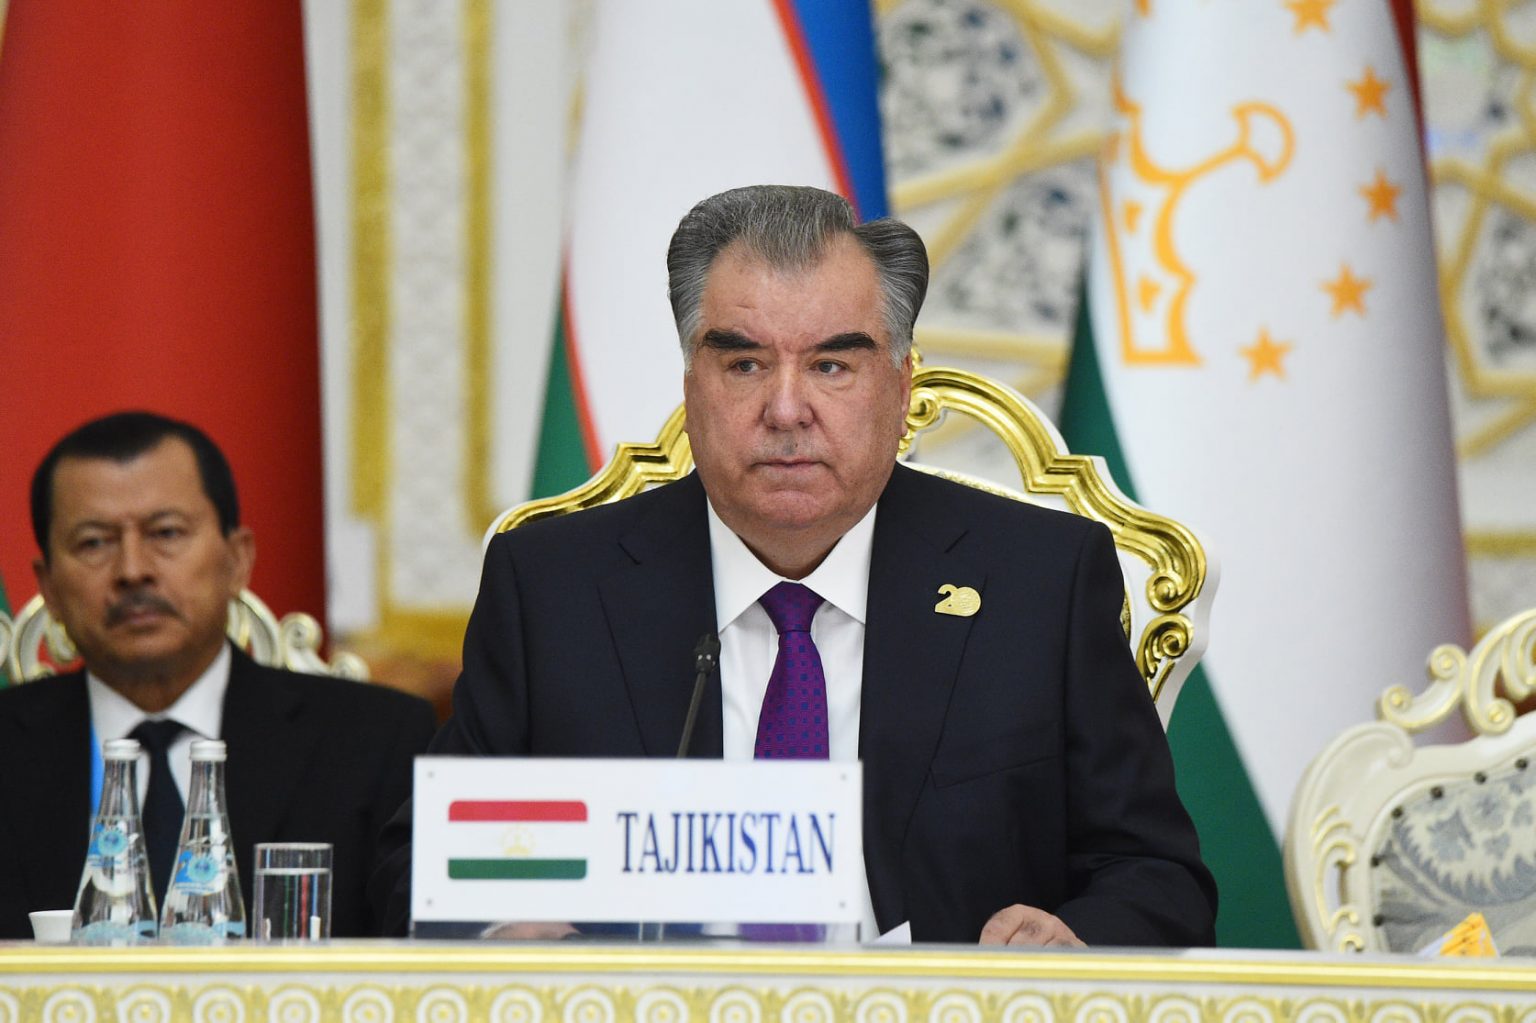 تاجیکستان خواهان ایجاد یک دولت فراگیر در افغانستان است